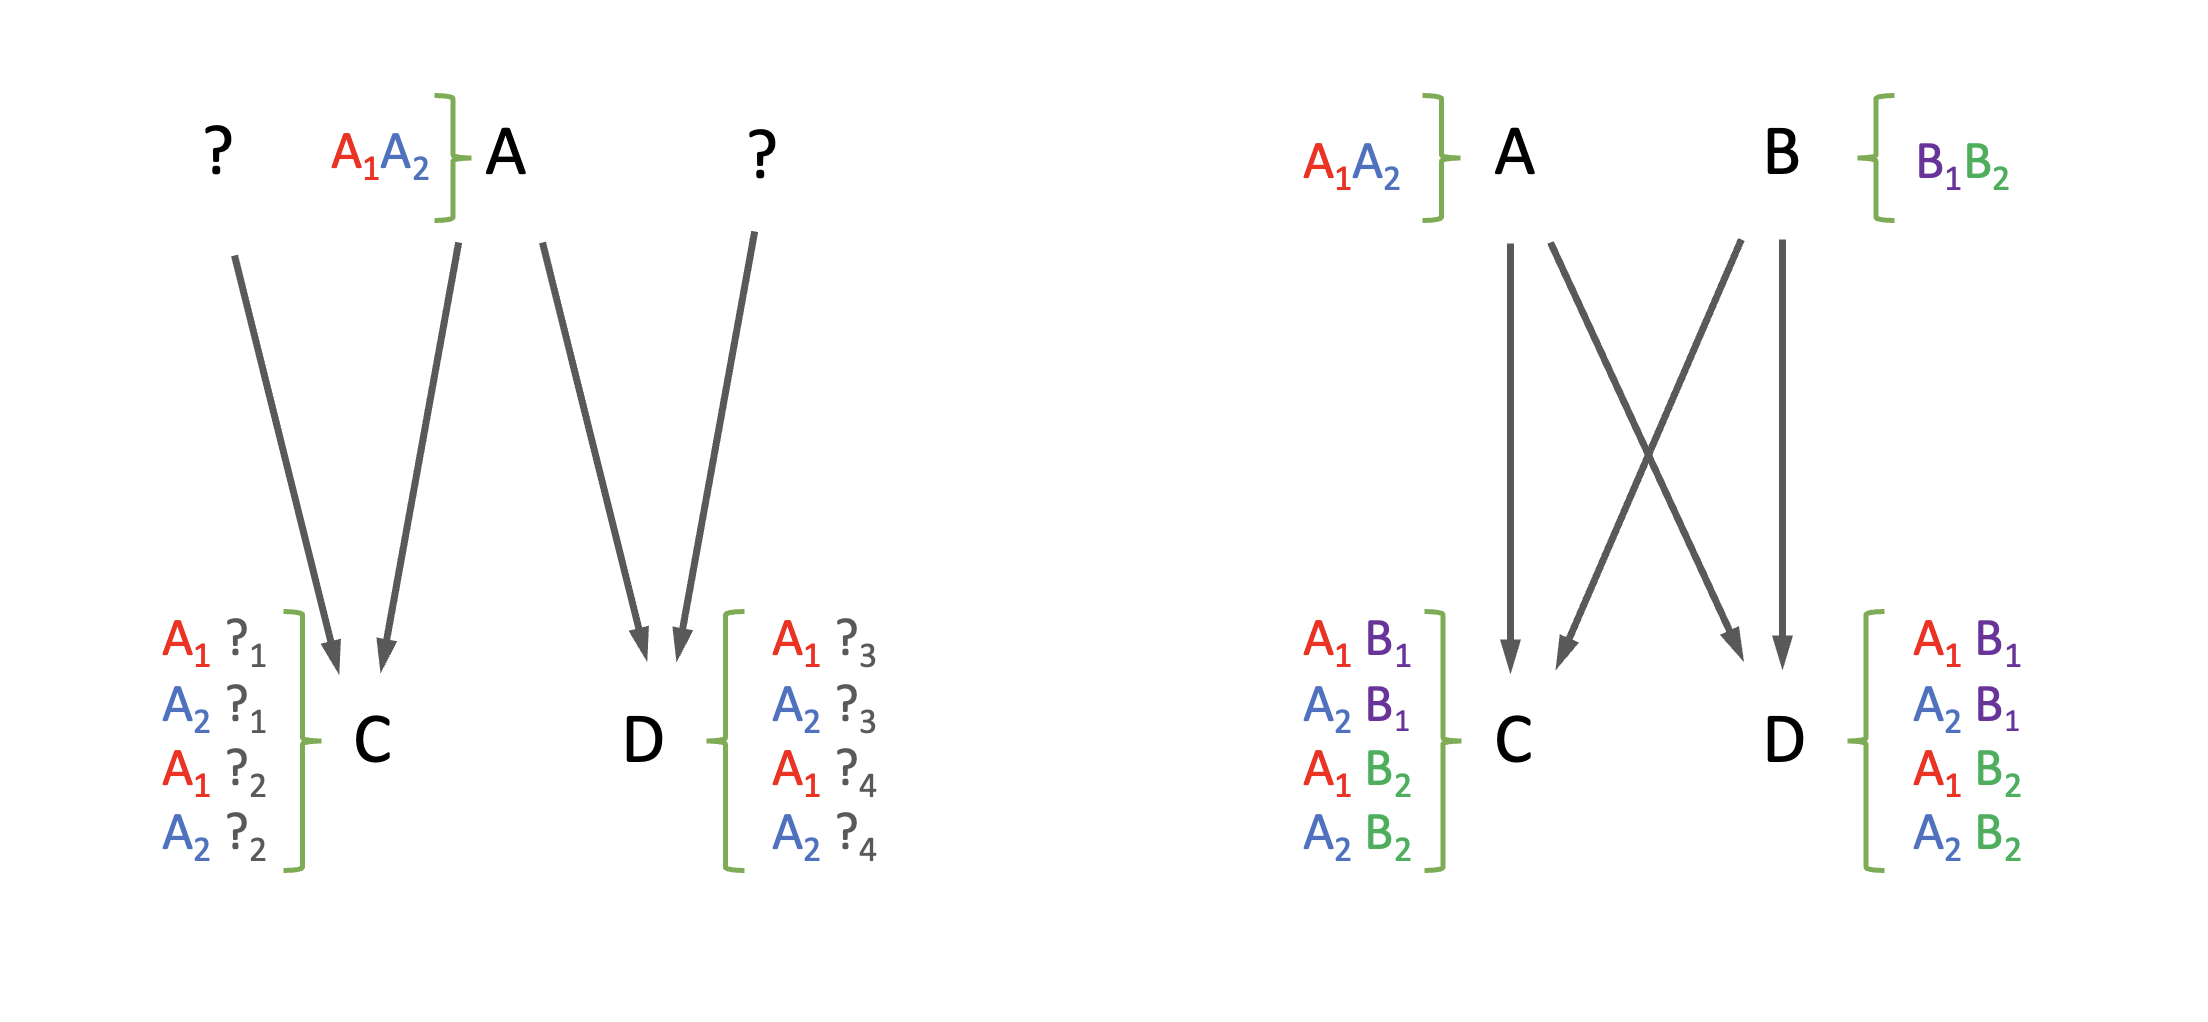 Representación de la relación entre alelos en el caso de parentesco aditivo colateral. A la izquierda la relación entre medios hermanos (MH), mientras que a la derecha observamos la relación de alelos entre hermanos enteros (HE).